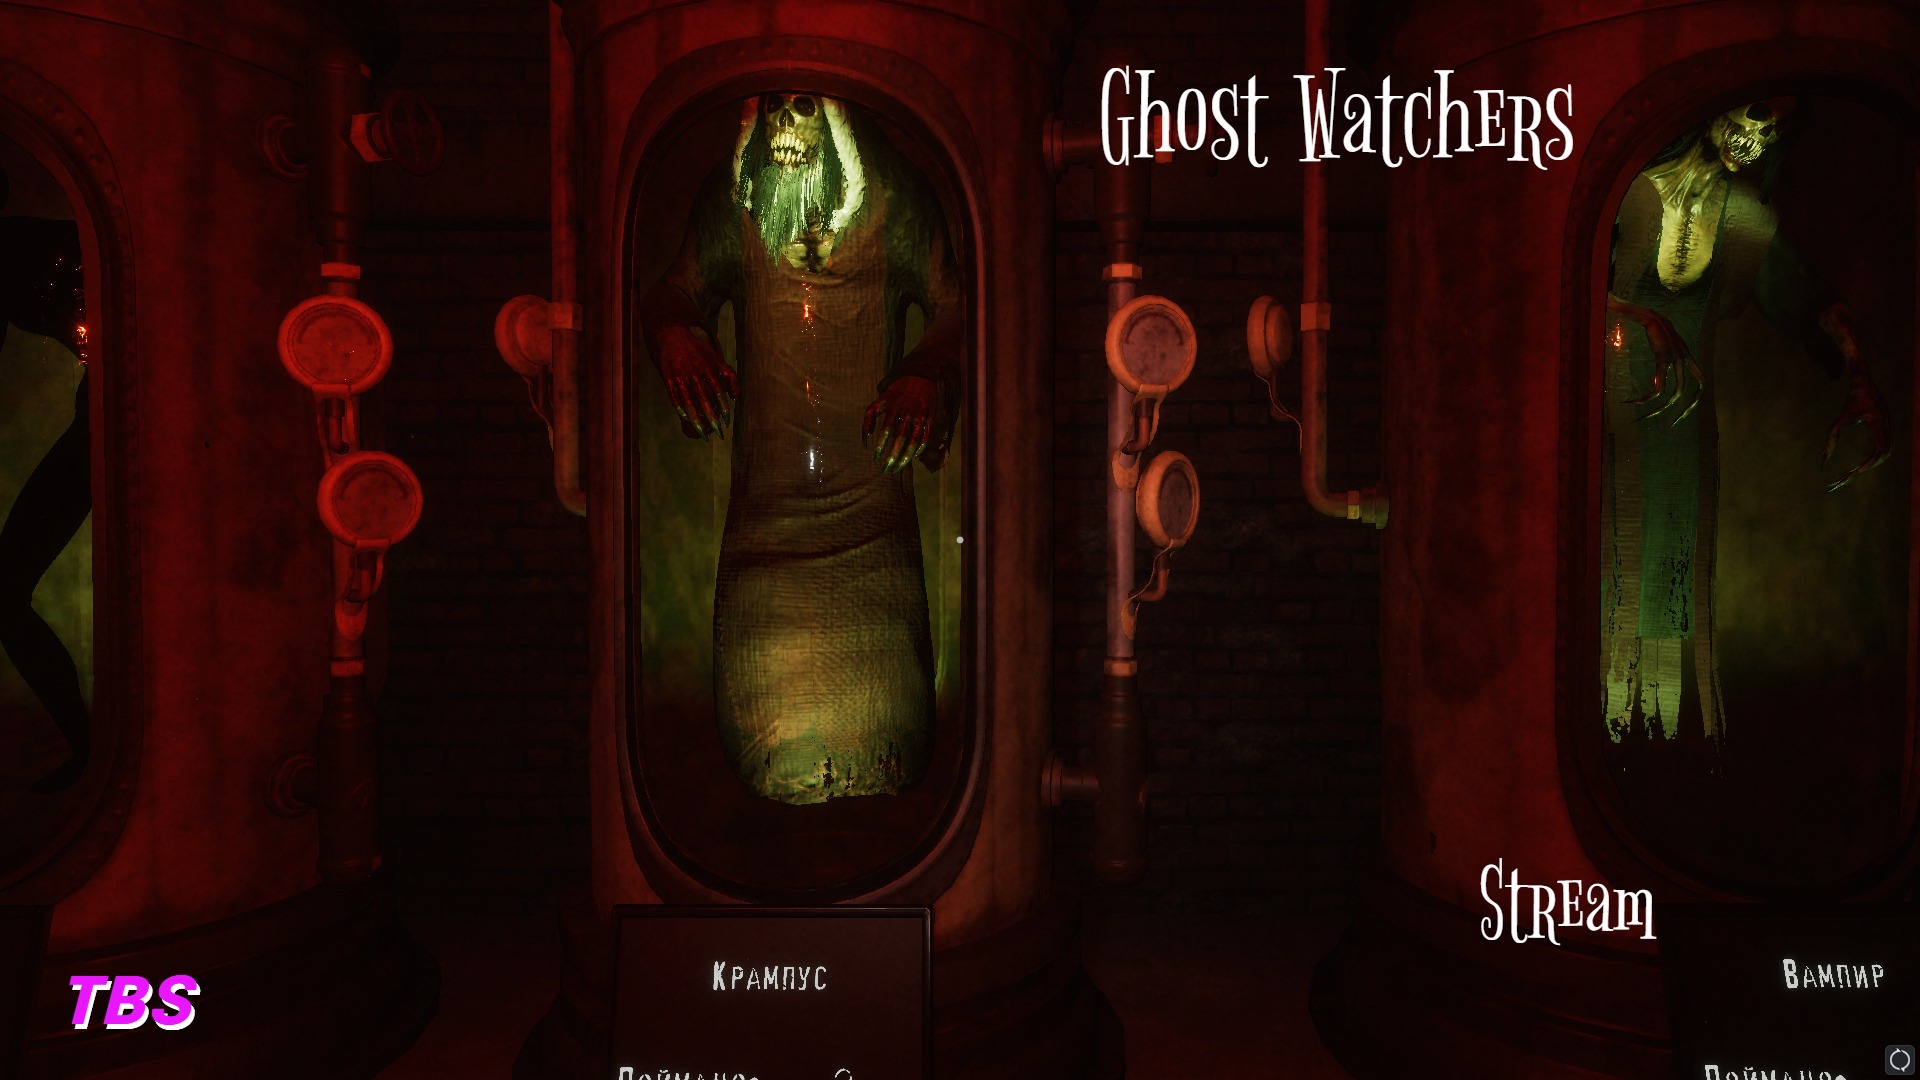 Ghost Watchers|Stream